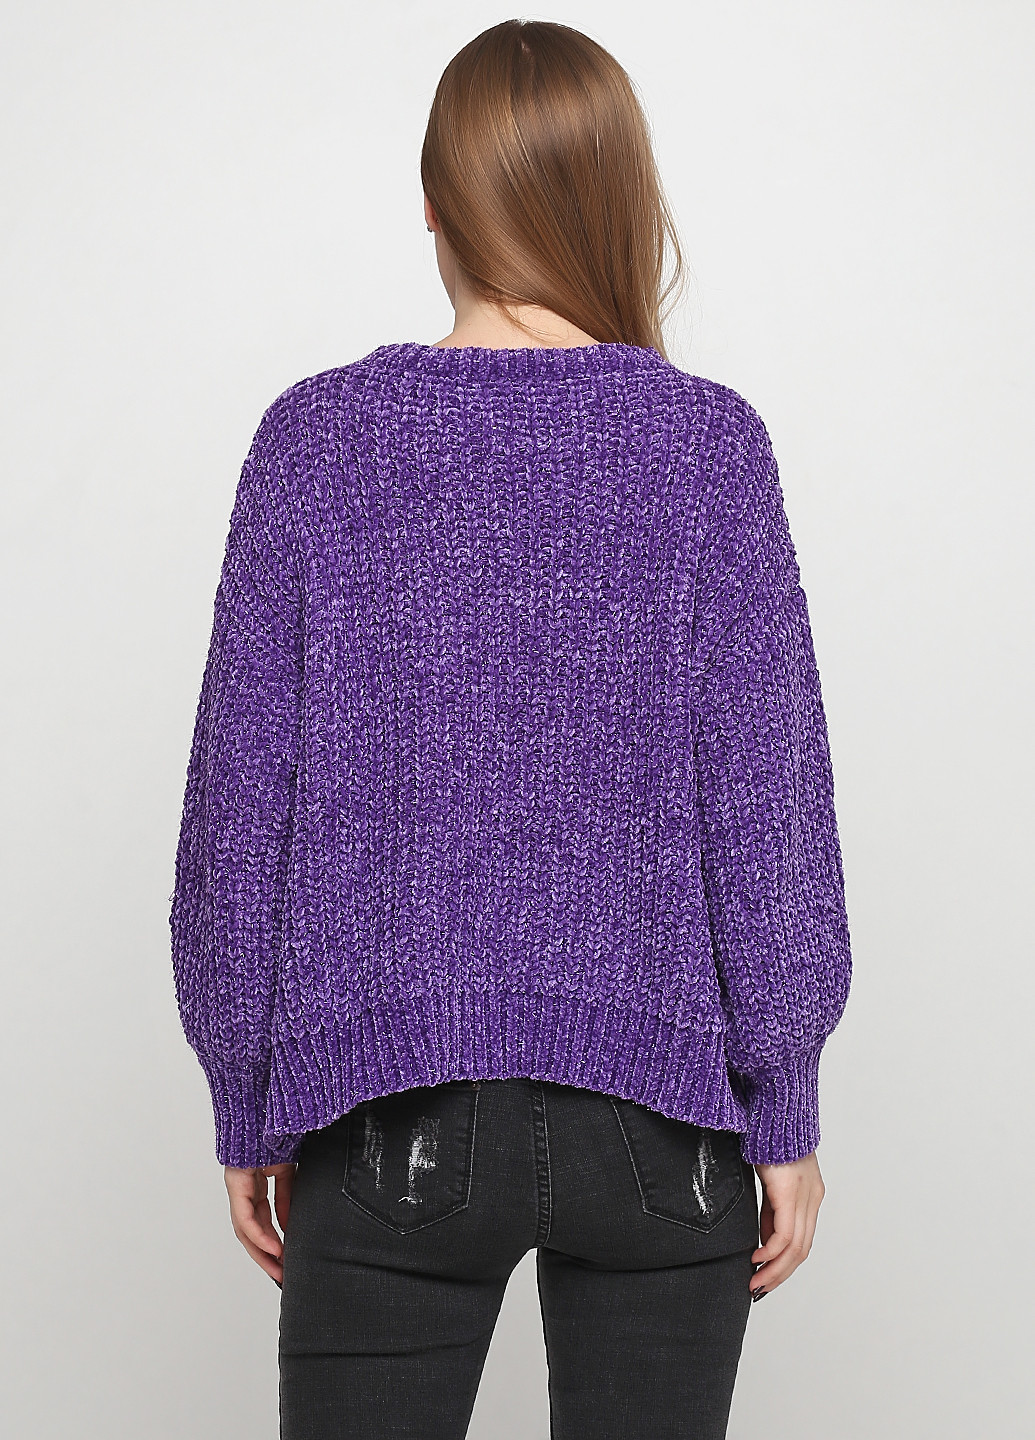 Фиолетовый демисезонный свитер джемпер Golden days Paris